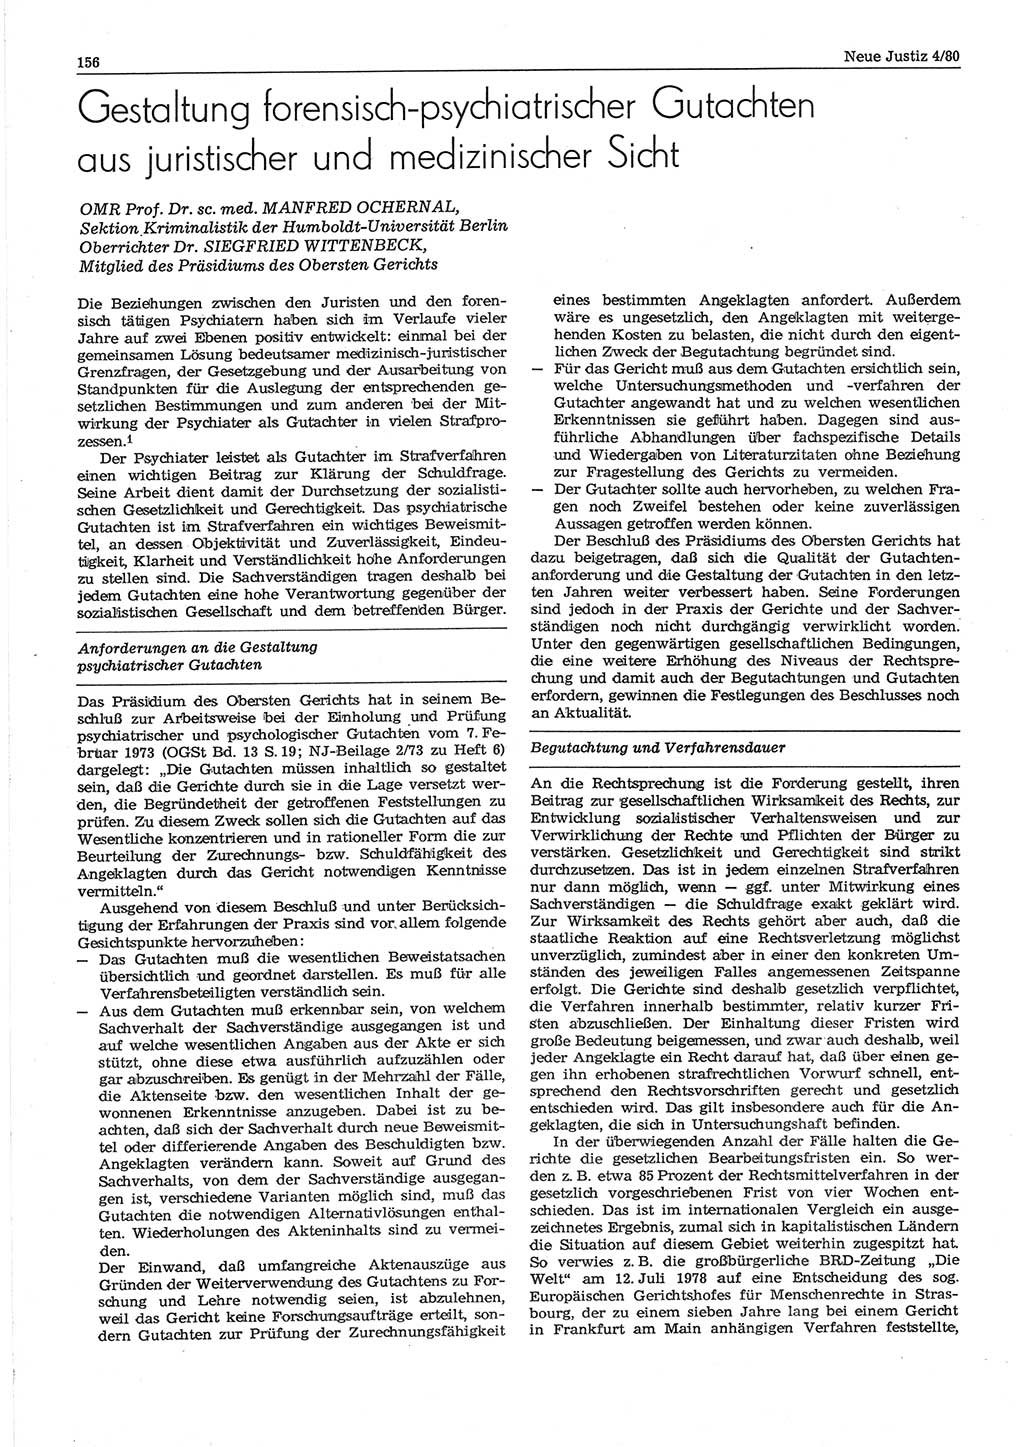 Neue Justiz (NJ), Zeitschrift für sozialistisches Recht und Gesetzlichkeit [Deutsche Demokratische Republik (DDR)], 34. Jahrgang 1980, Seite 156 (NJ DDR 1980, S. 156)